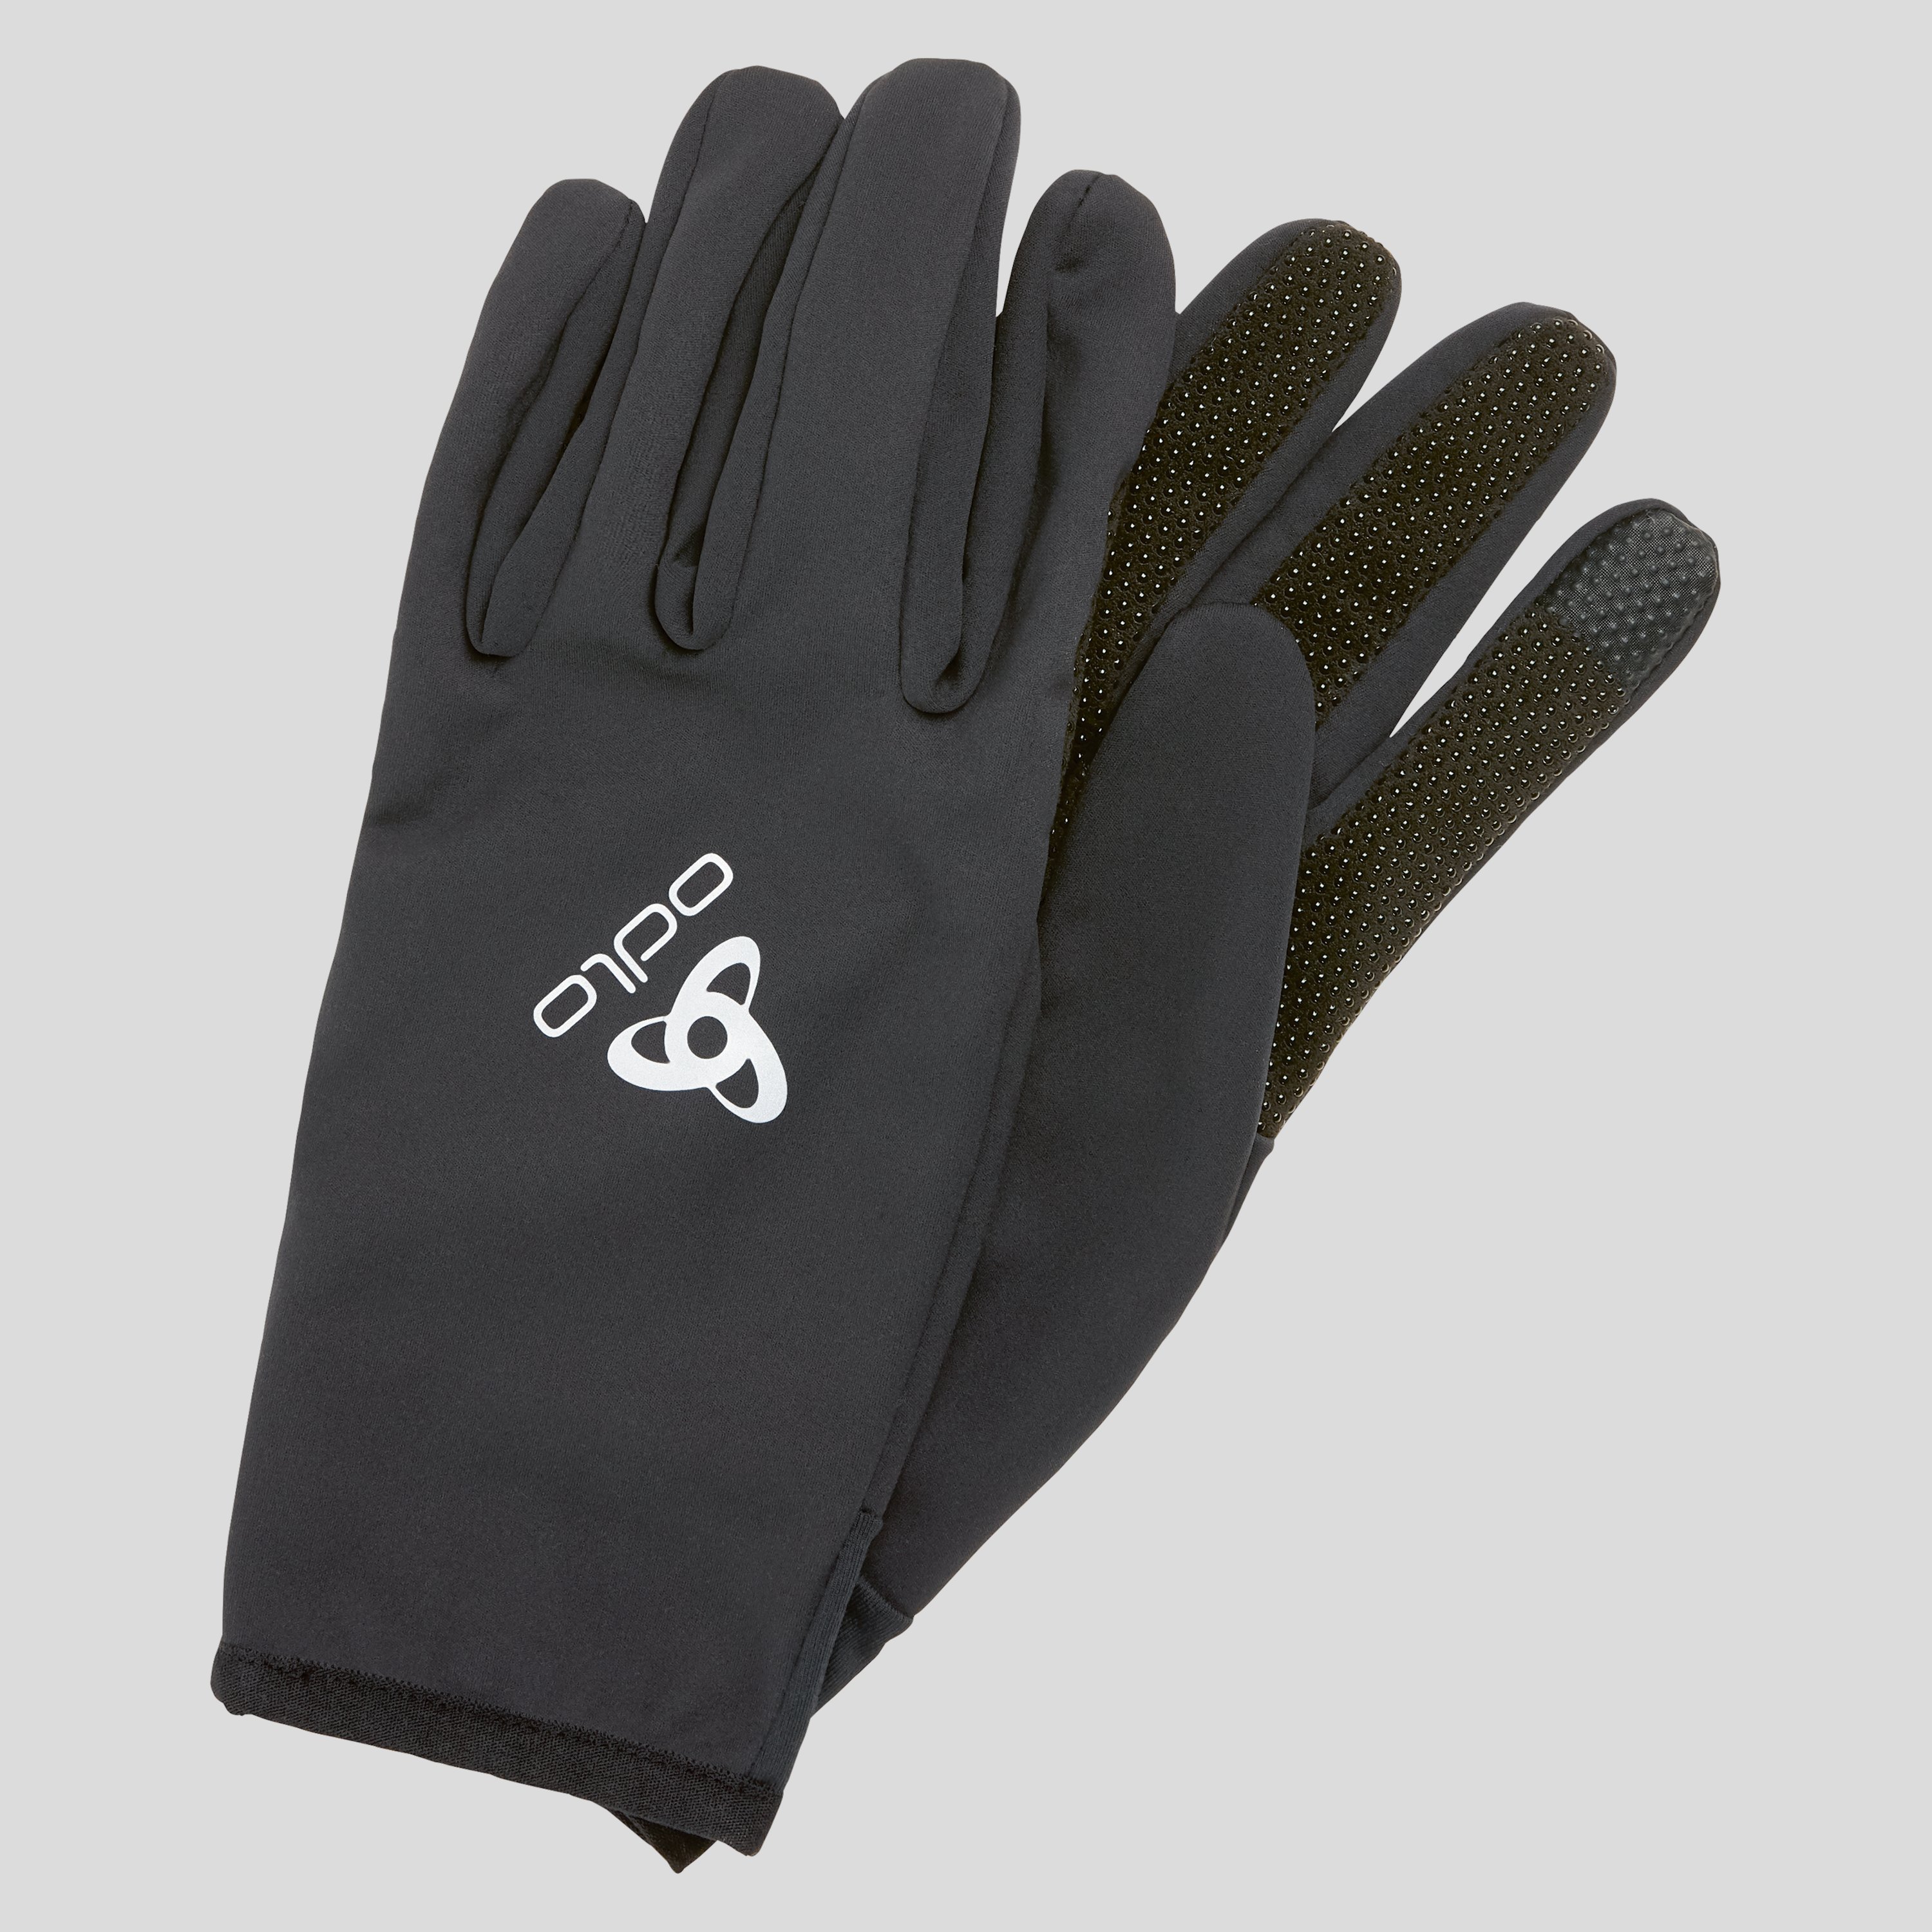 ODLO Ceramiwarm Grip Handschuhe, XXS, schwarz